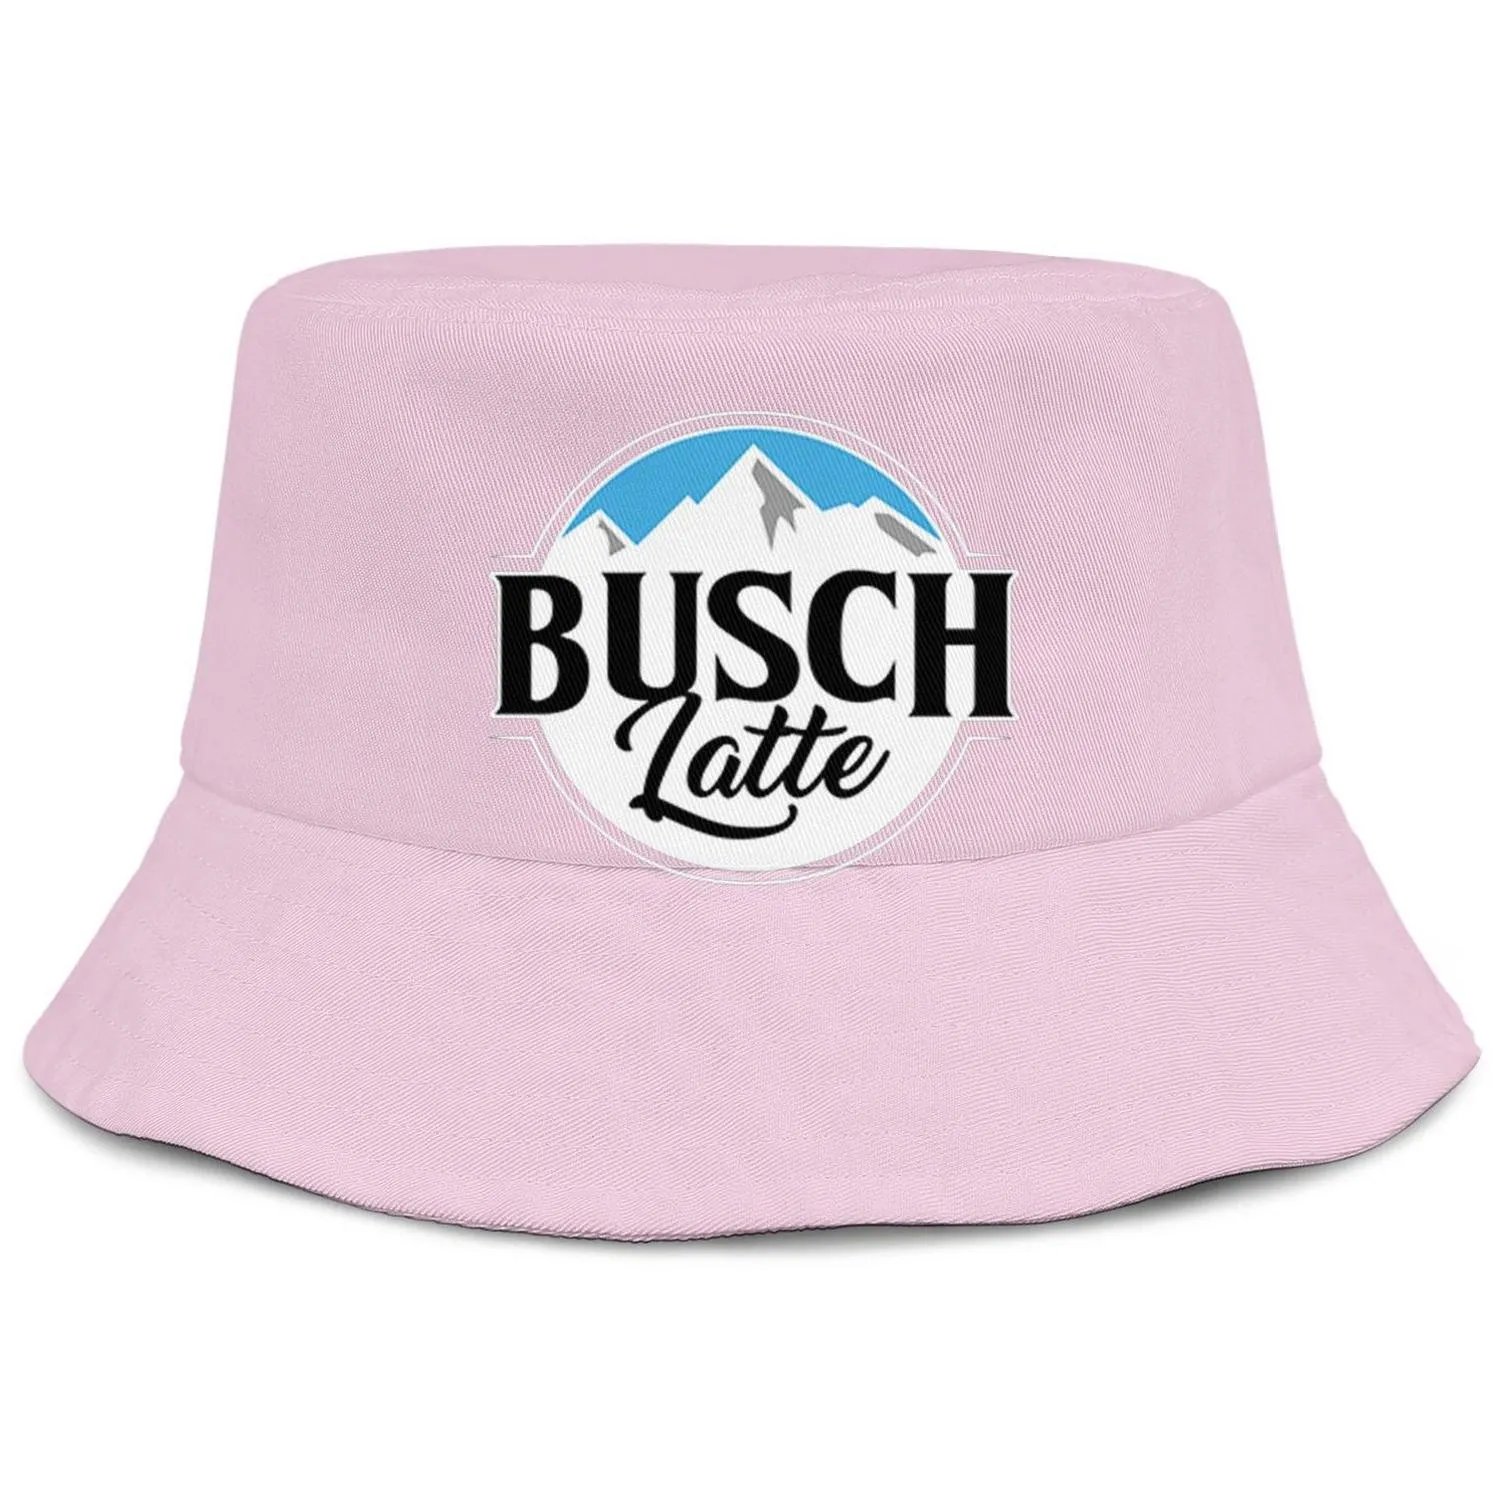 Busch Light Beer logo hommes et femmes buckethat cool jeunesse seau casquette de baseball bleu clair bord blanc Latte So Much4707196